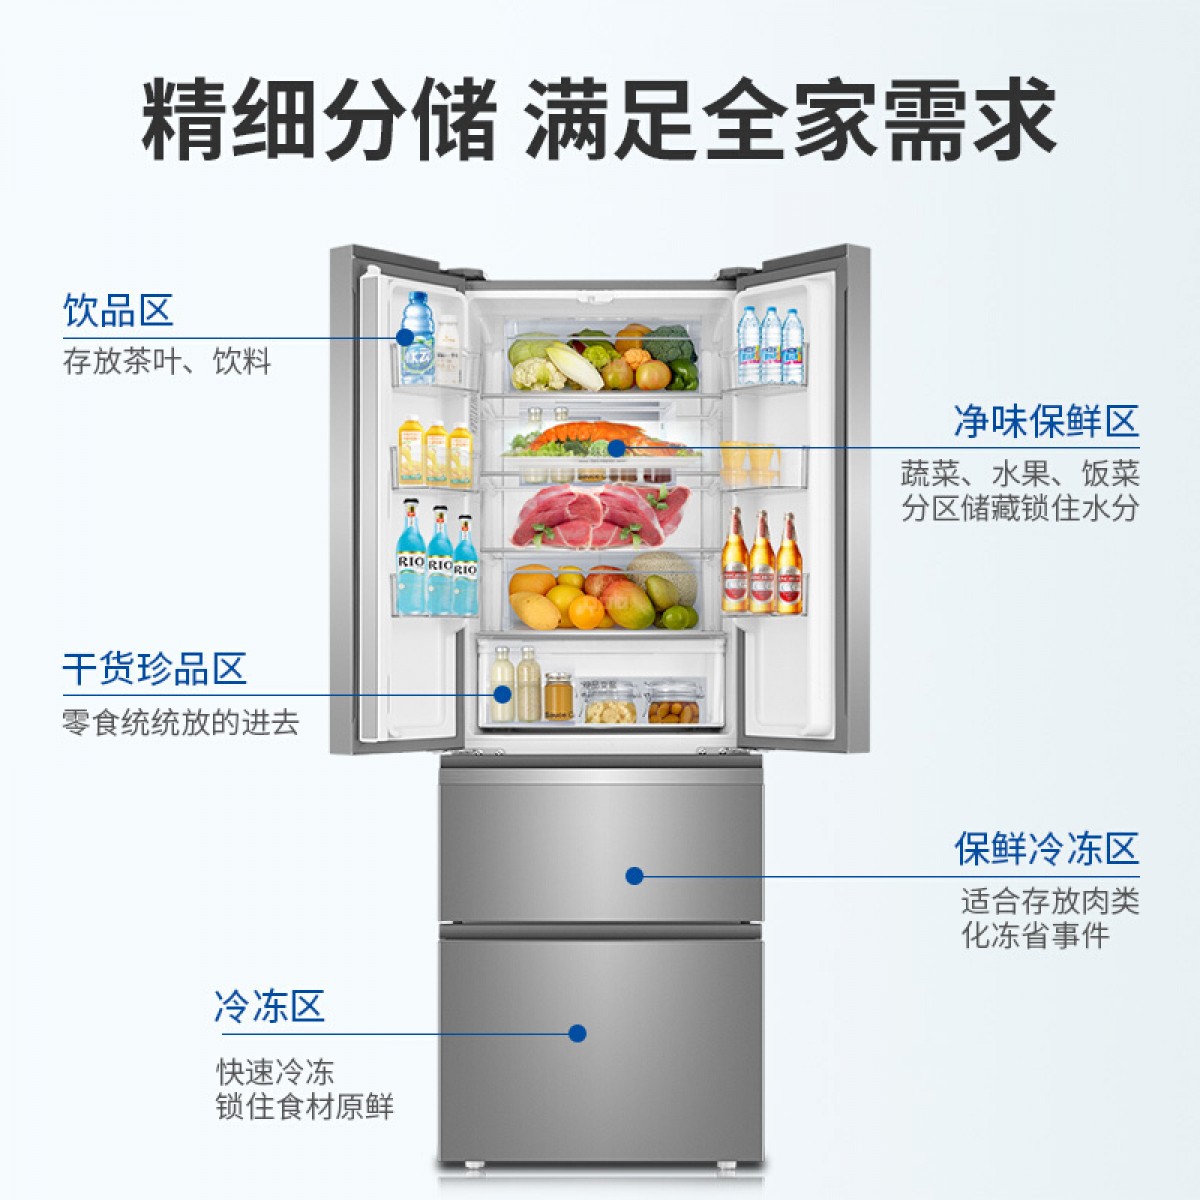 海尔冰箱双开门法式冰箱风冷无霜家用超薄静音节能BCD-336WDPC